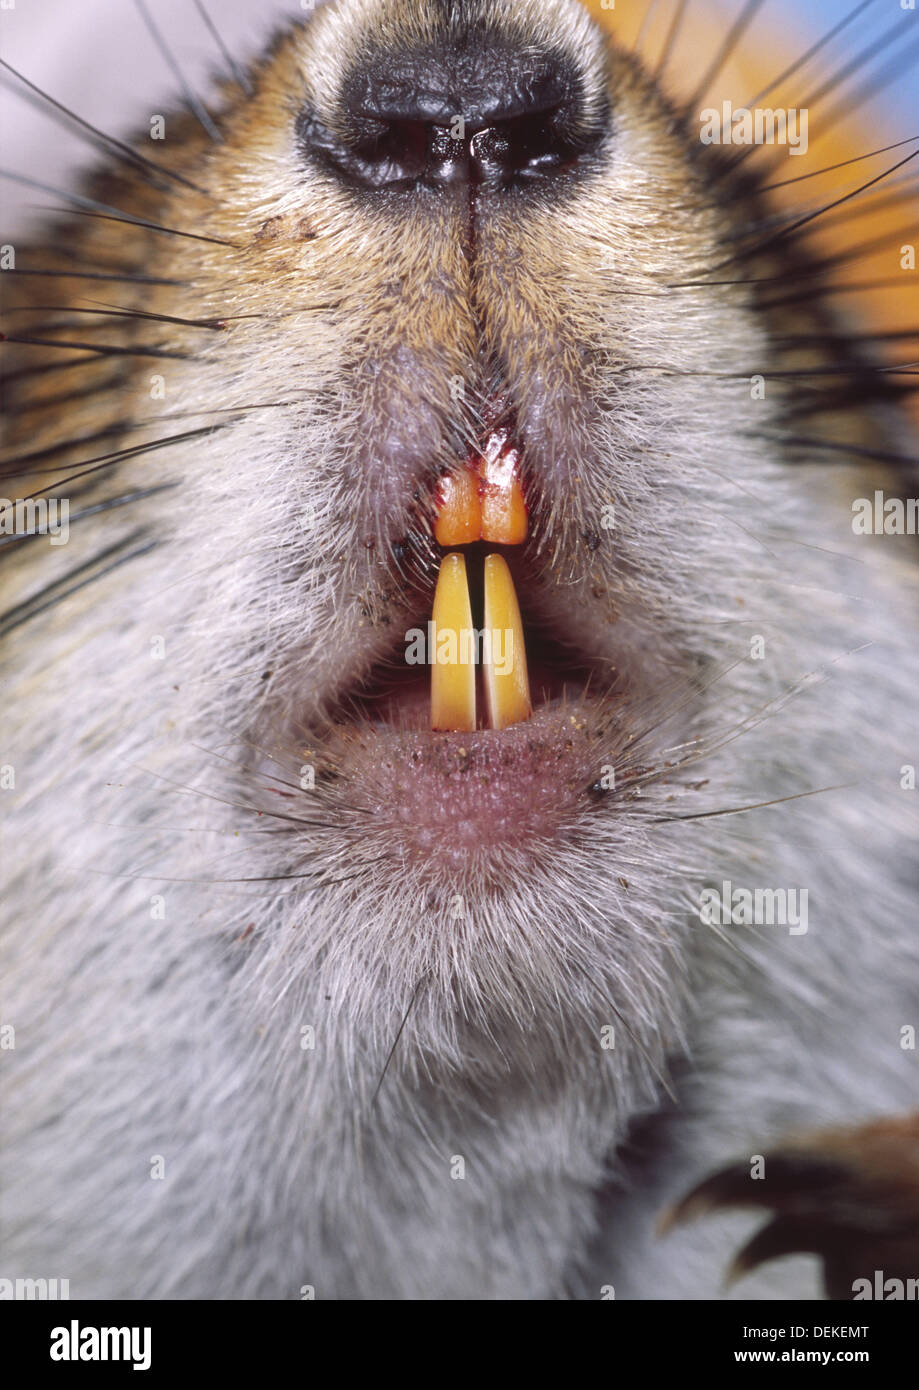 Rodent teeth immagini e fotografie stock ad alta risoluzione - Alamy